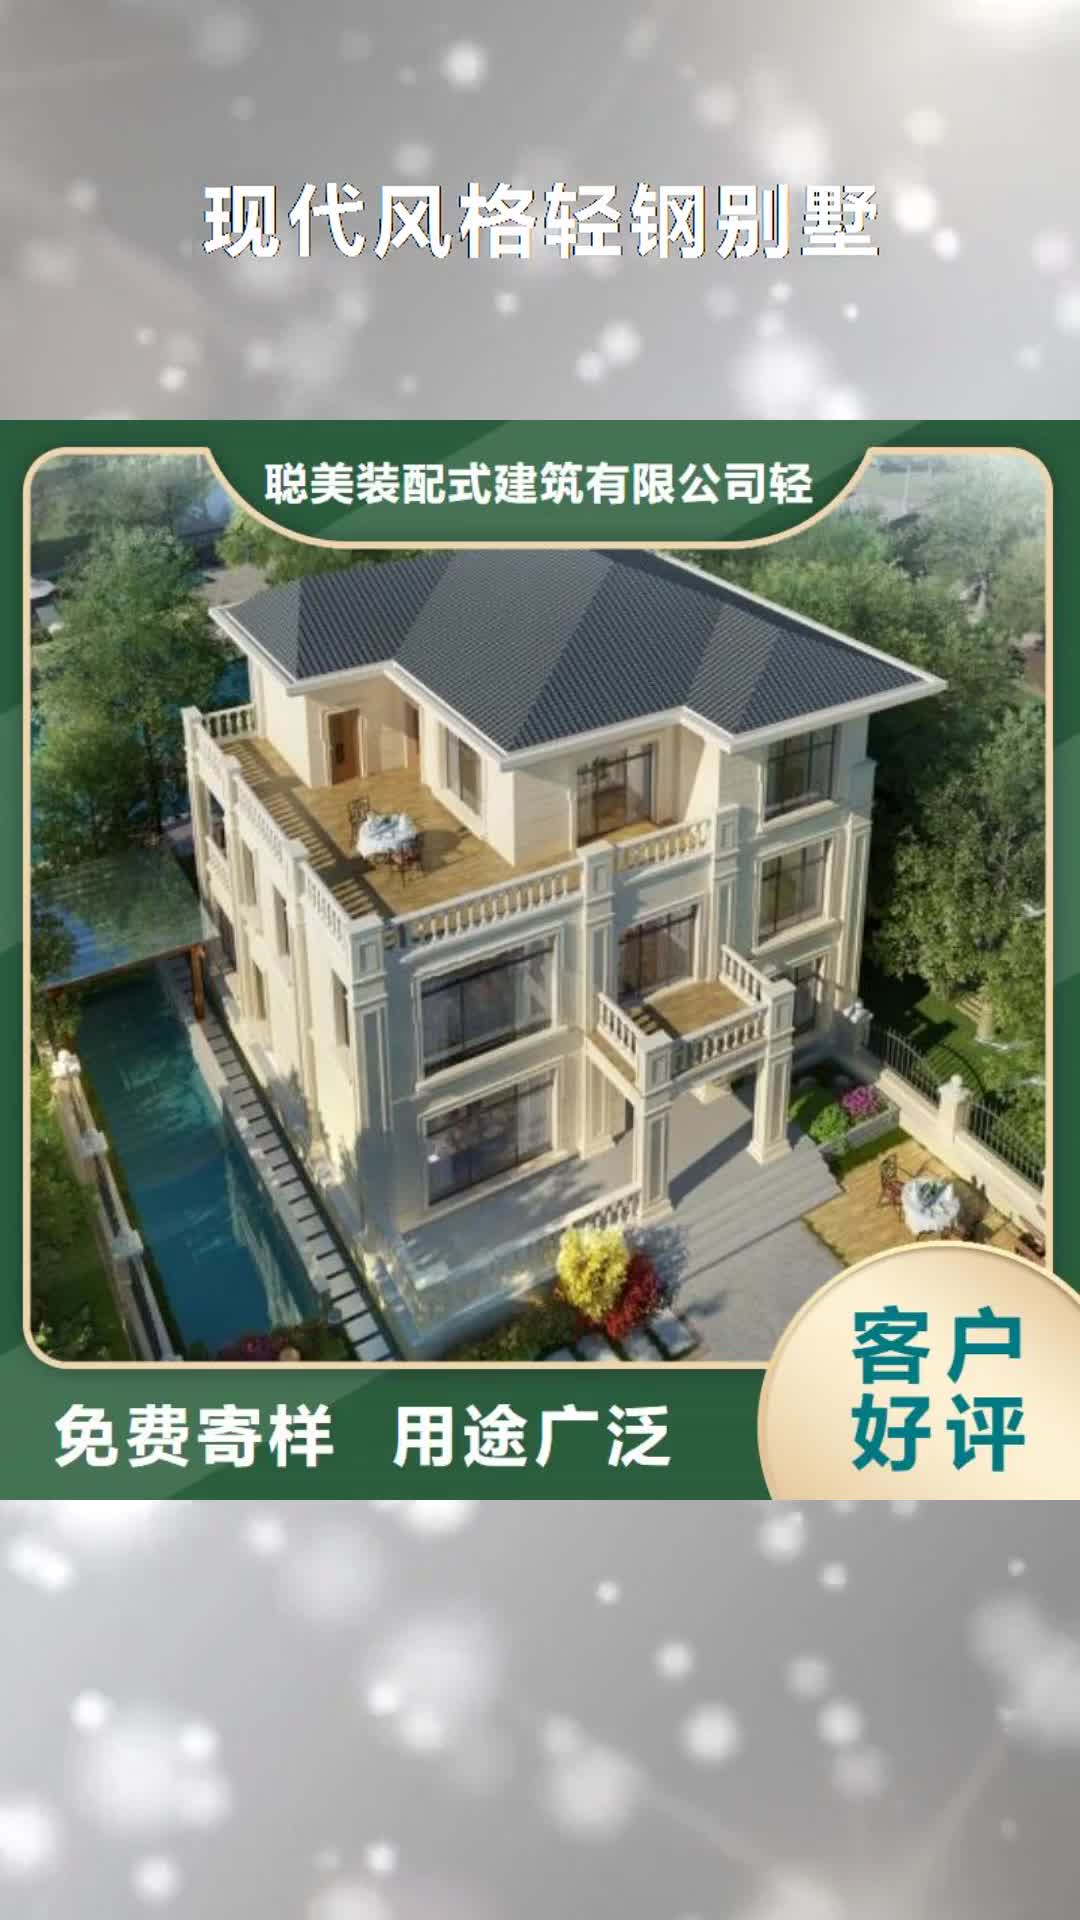 宁波 现代风格轻钢别墅,【钢结构装配式房屋】支持拿样